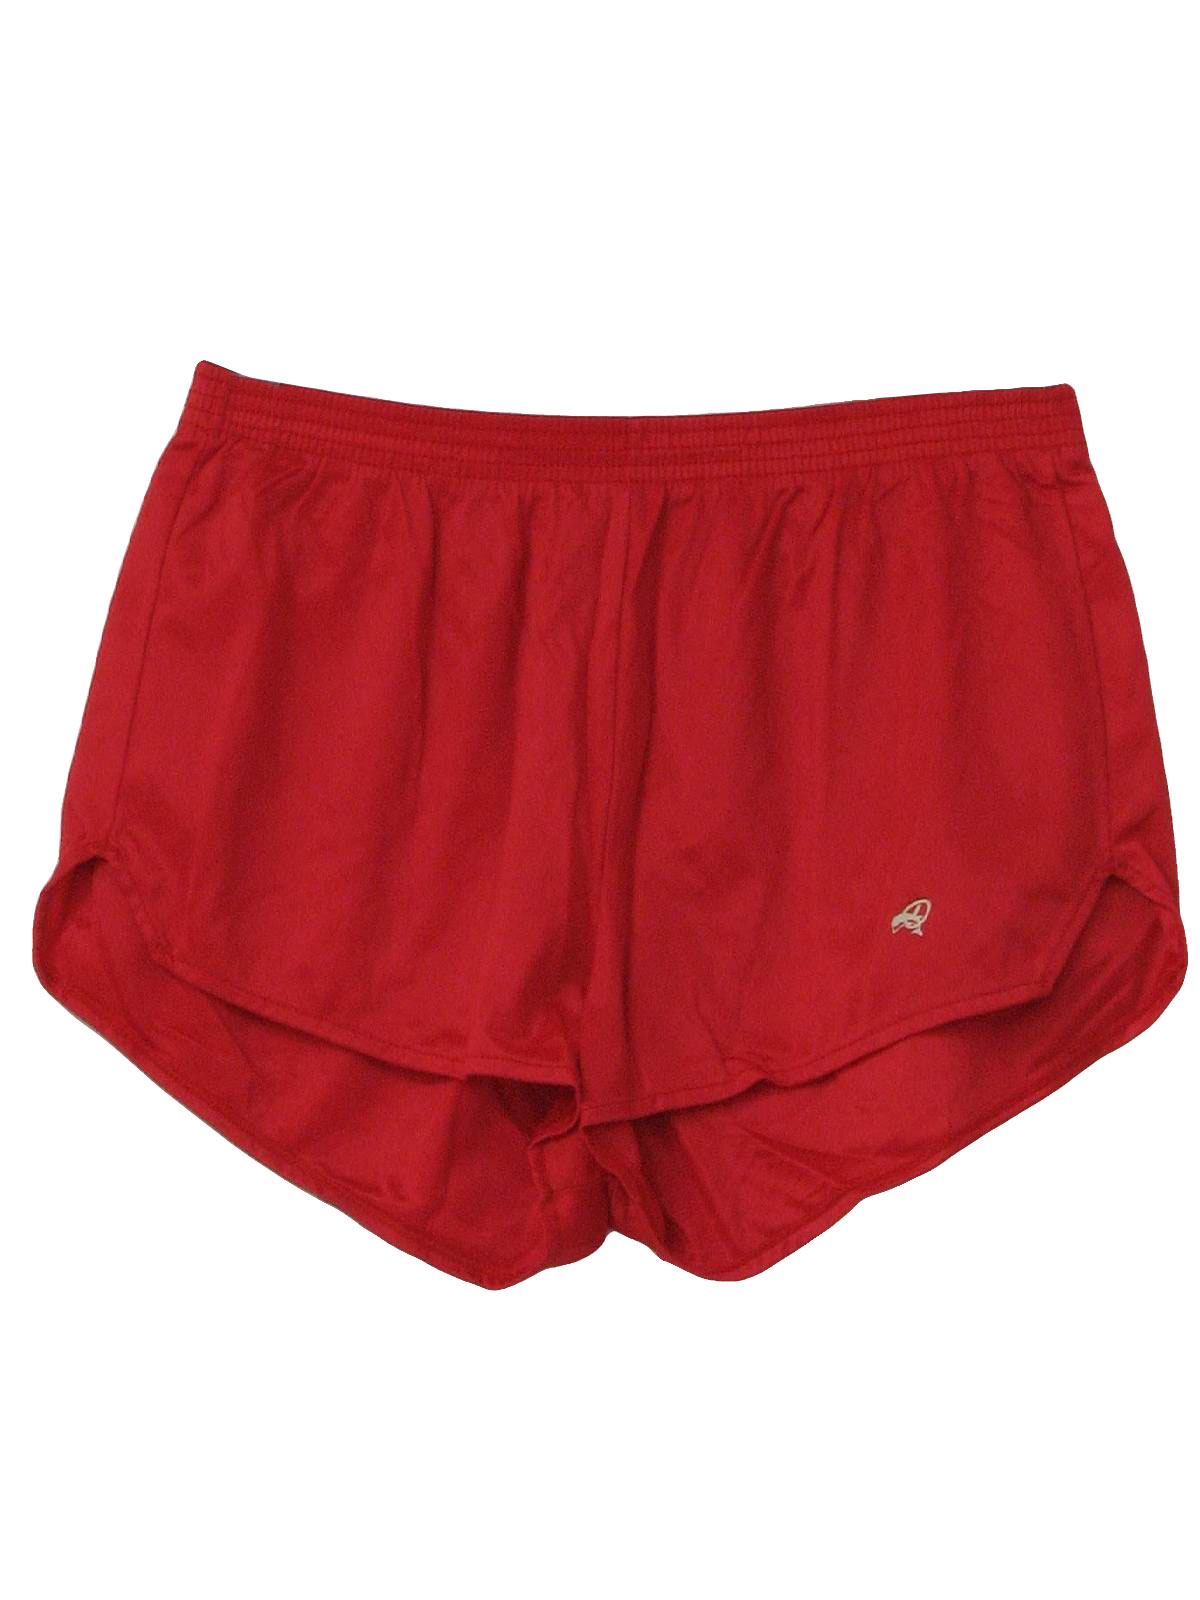 1980s Vintage Shorts: 80s -Dolfin- Mens red background nylon on nylon ...